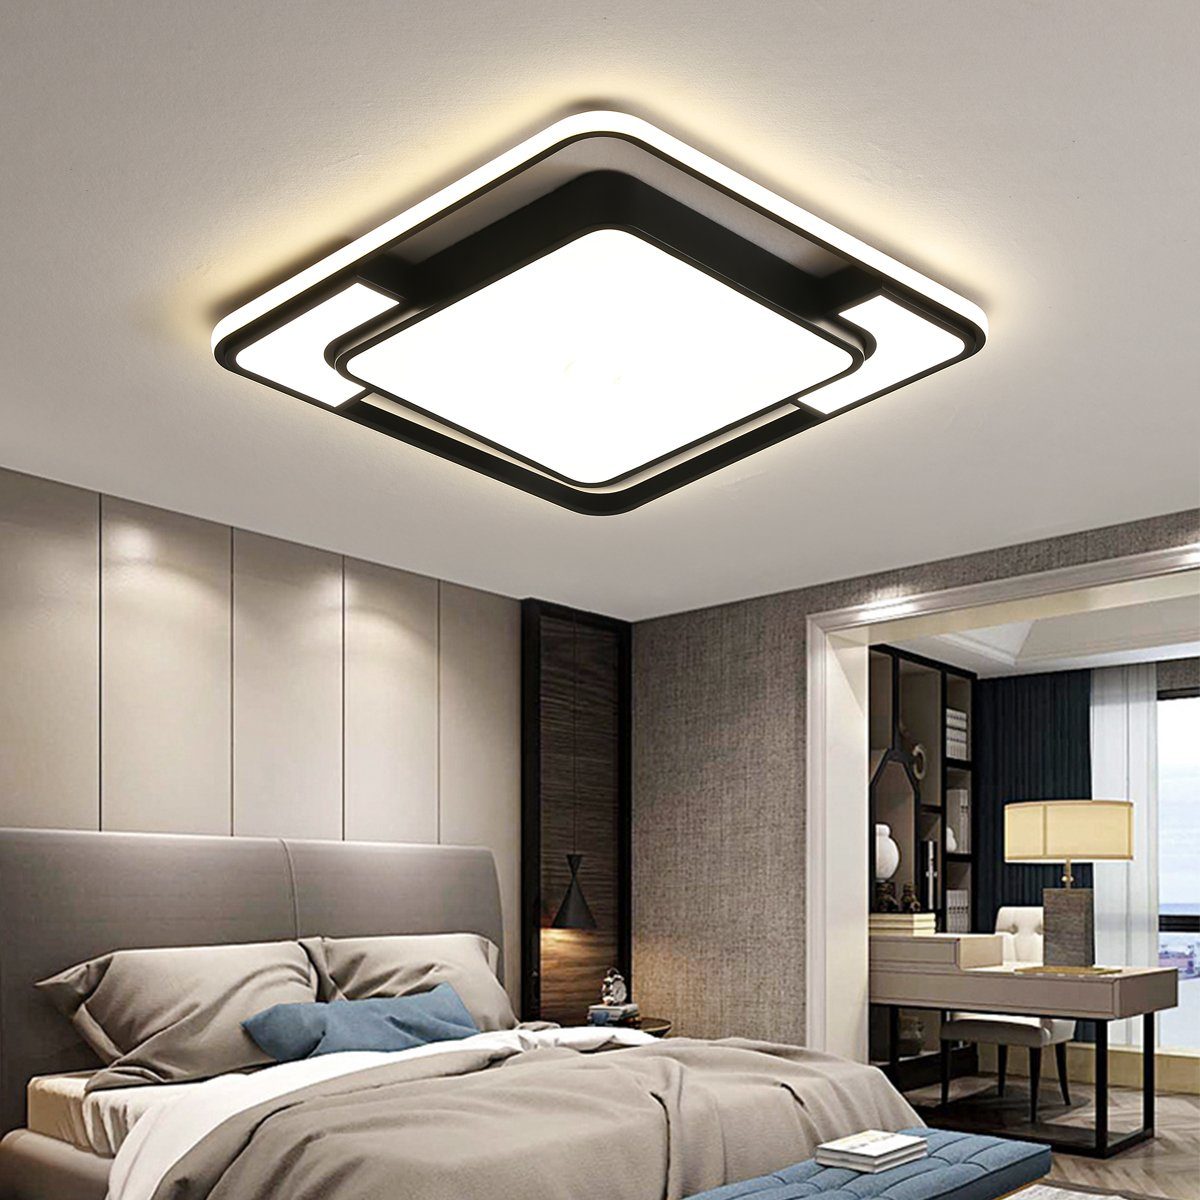 PHILIPS LED Decken Lampe DIMMBAR Beleuchtung Wohn Raum Schlaf Zimmer CCT Leuchte 